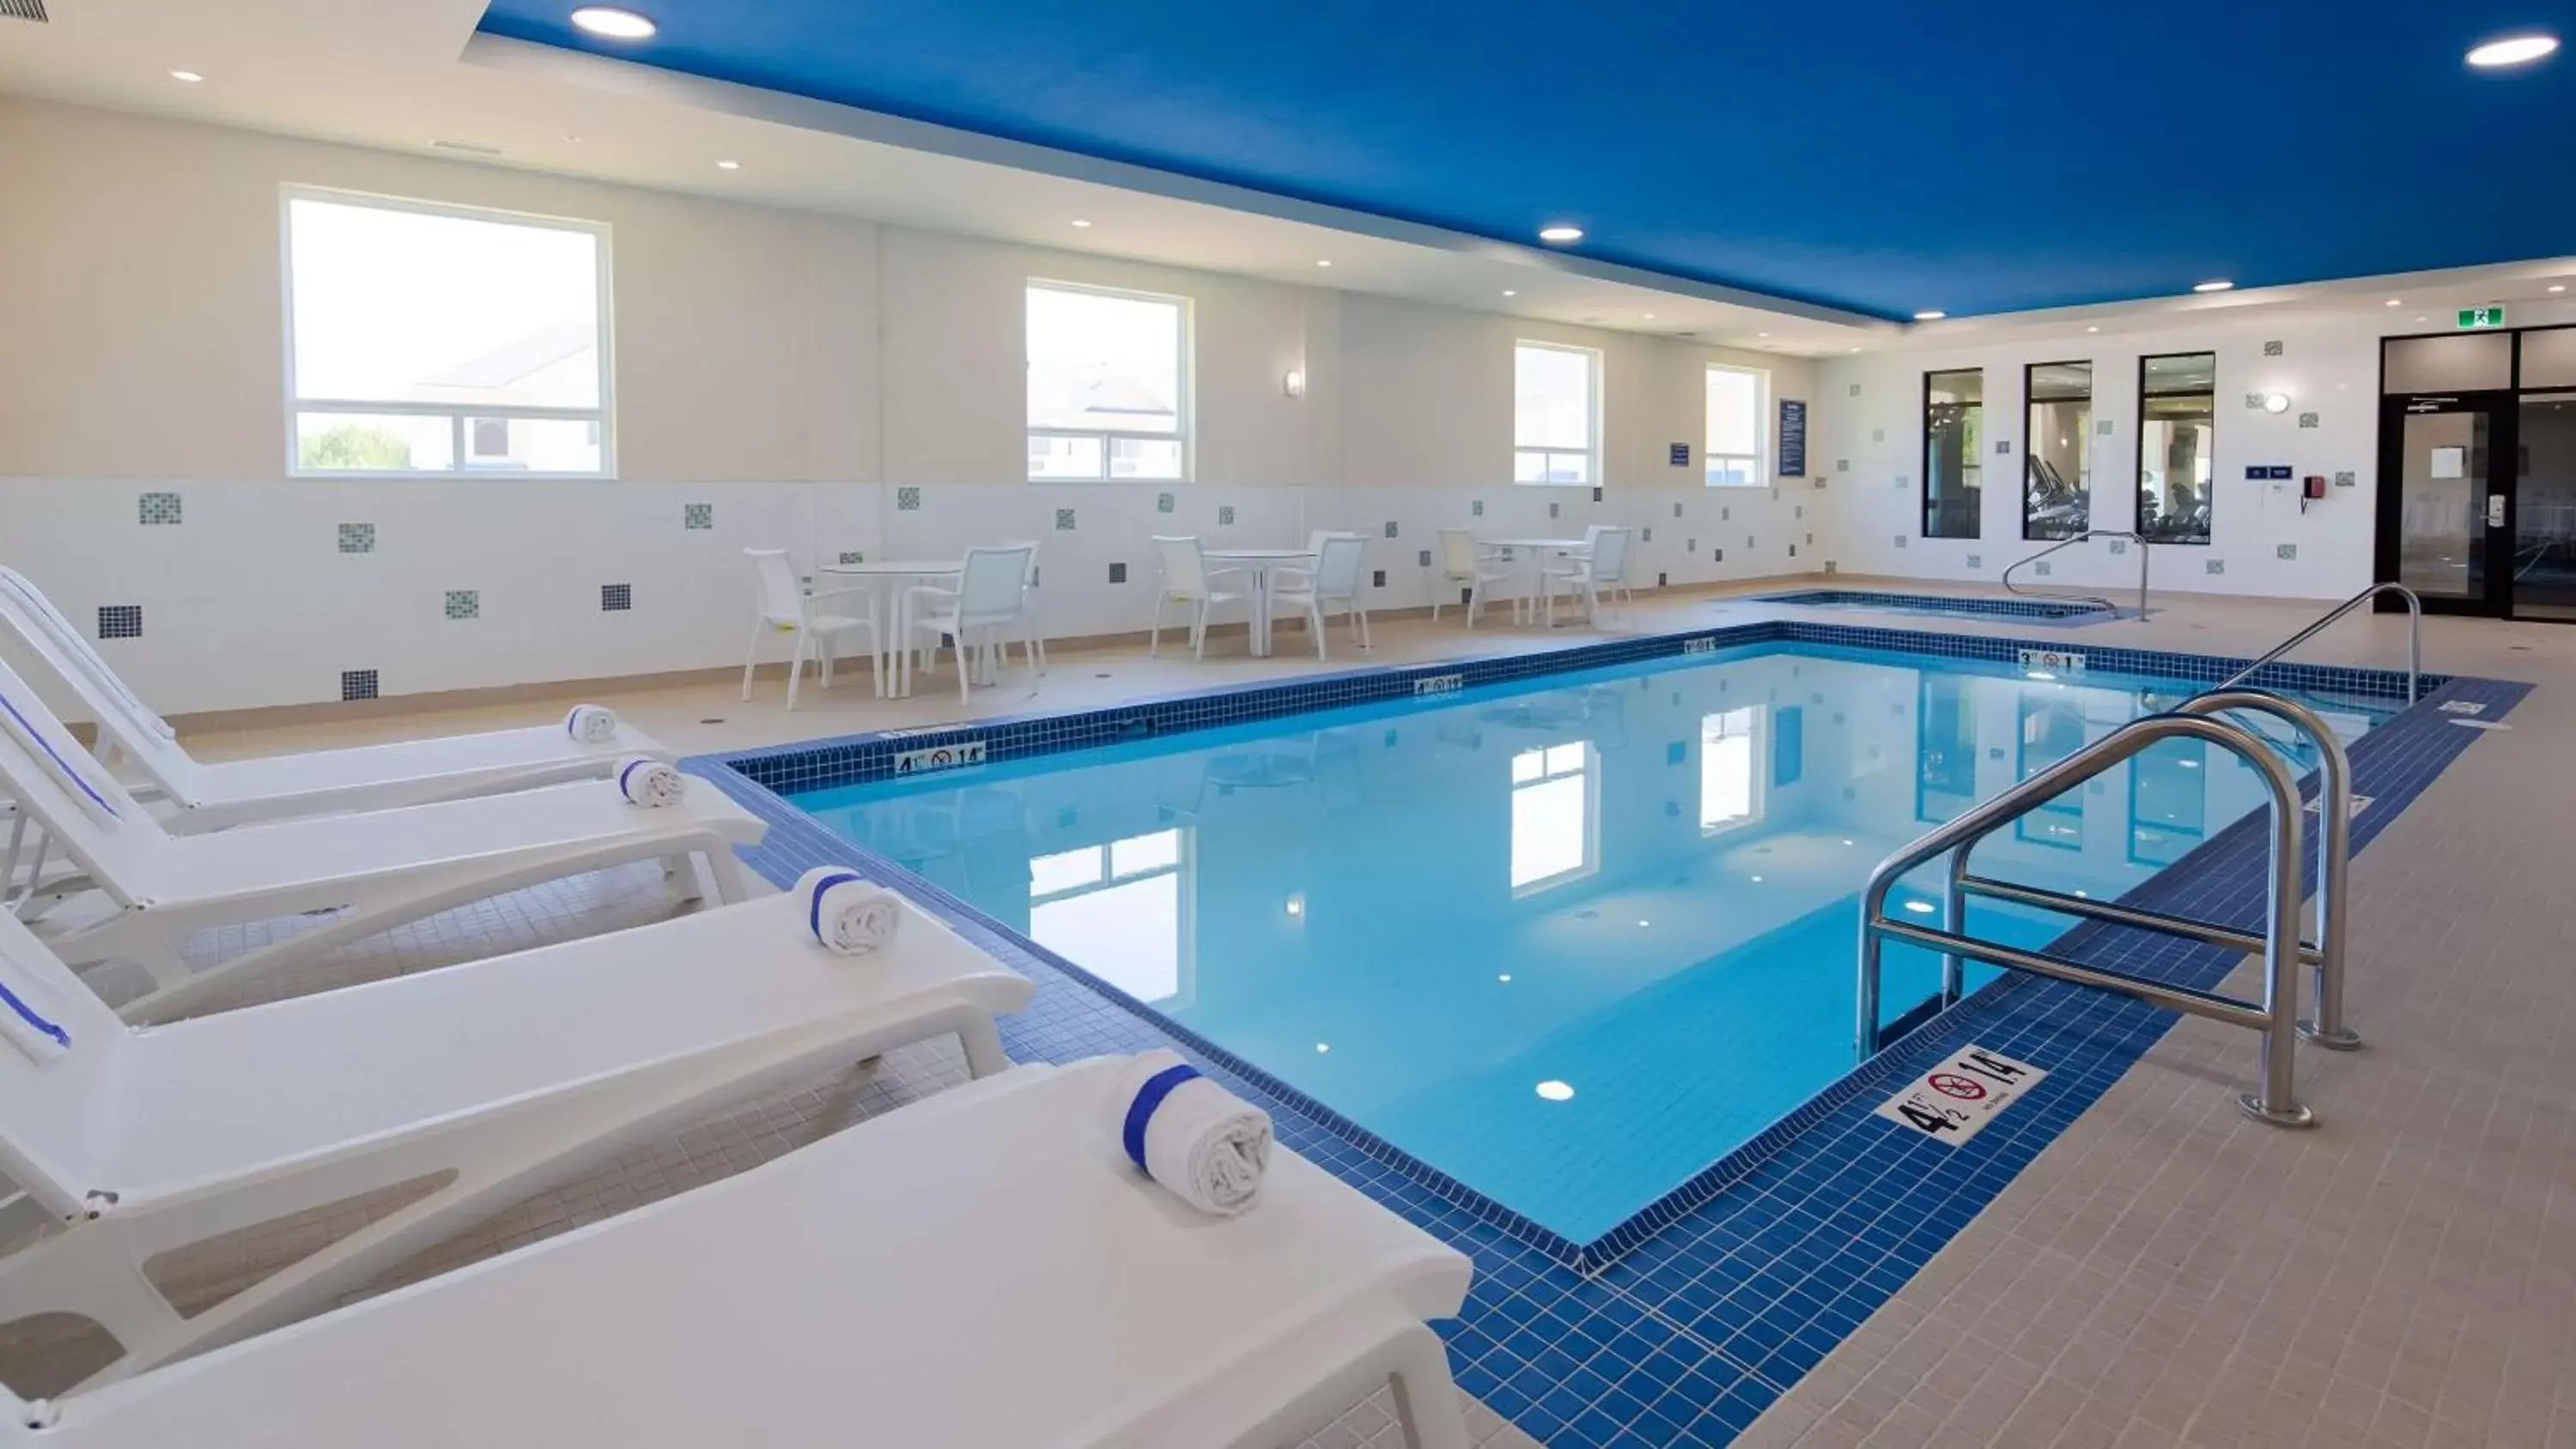 On site, Swimming Pool in Best Western Plus Hinton Inn & Suites